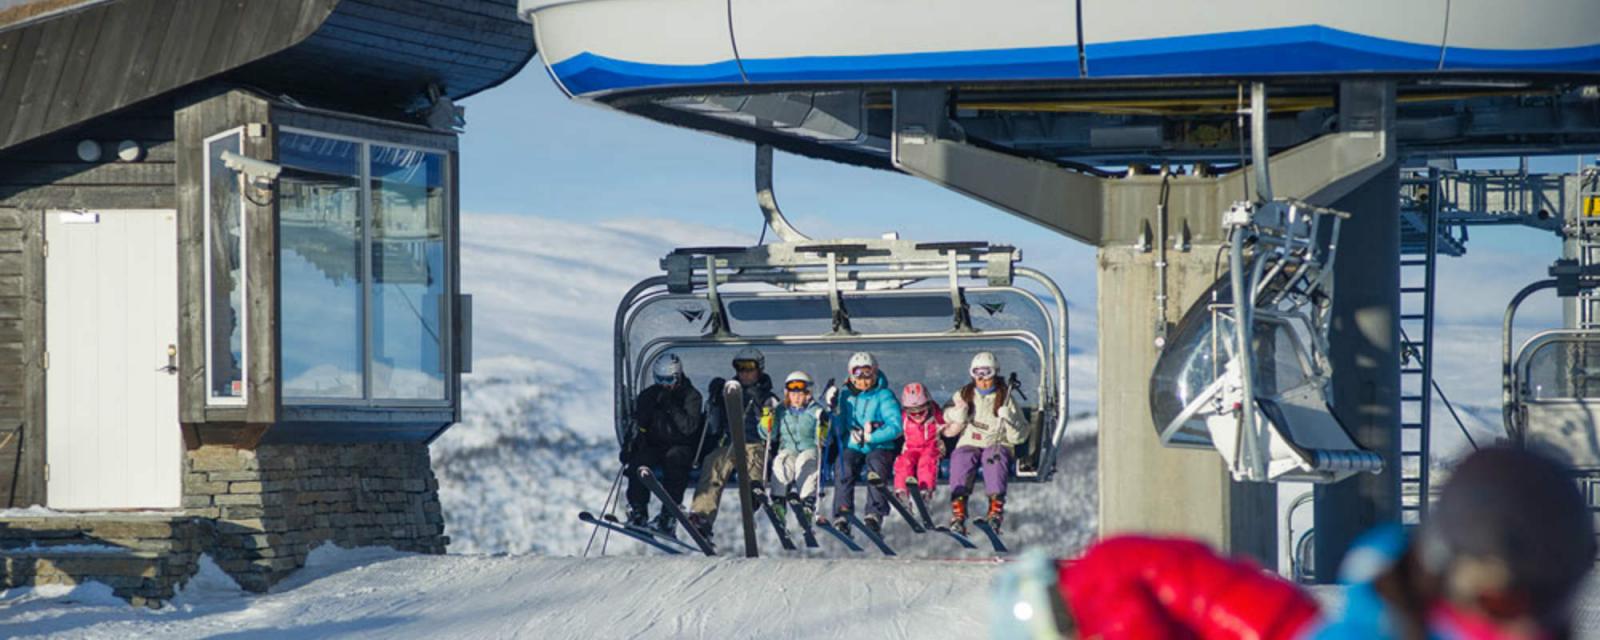 Ski & City: wintervakantie naar het Noorse Geilo 